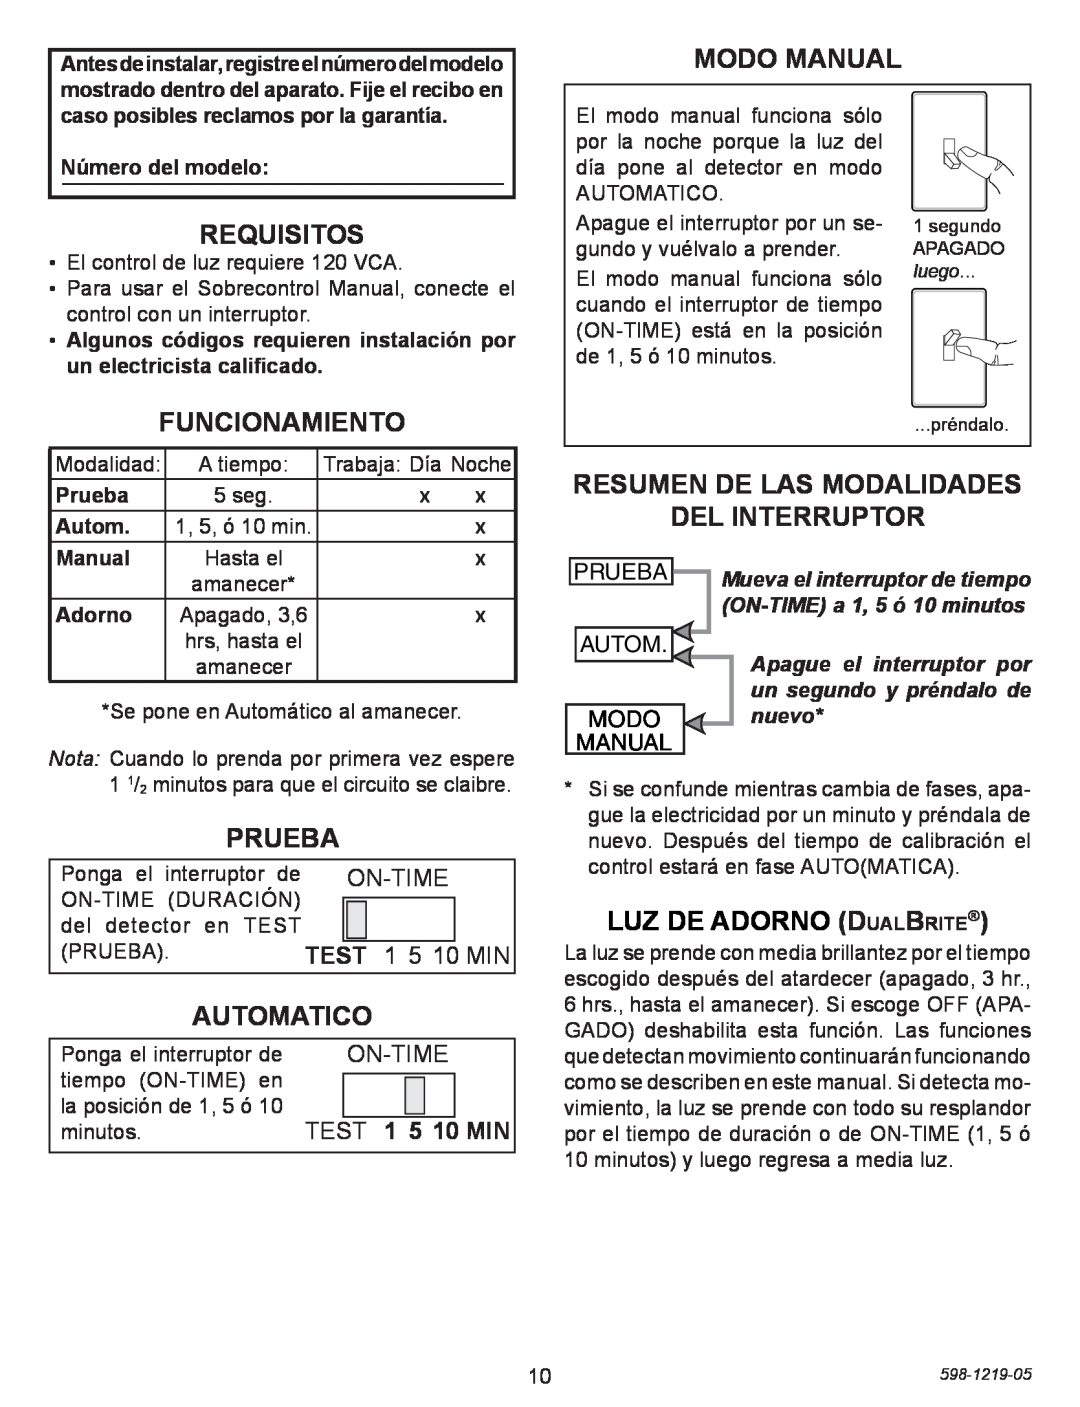 Heath Zenith 4350 Modo Manual, Requisitos, Funcionamiento, Prueba, Automatico, Resumen de las modalidades del interruptor 